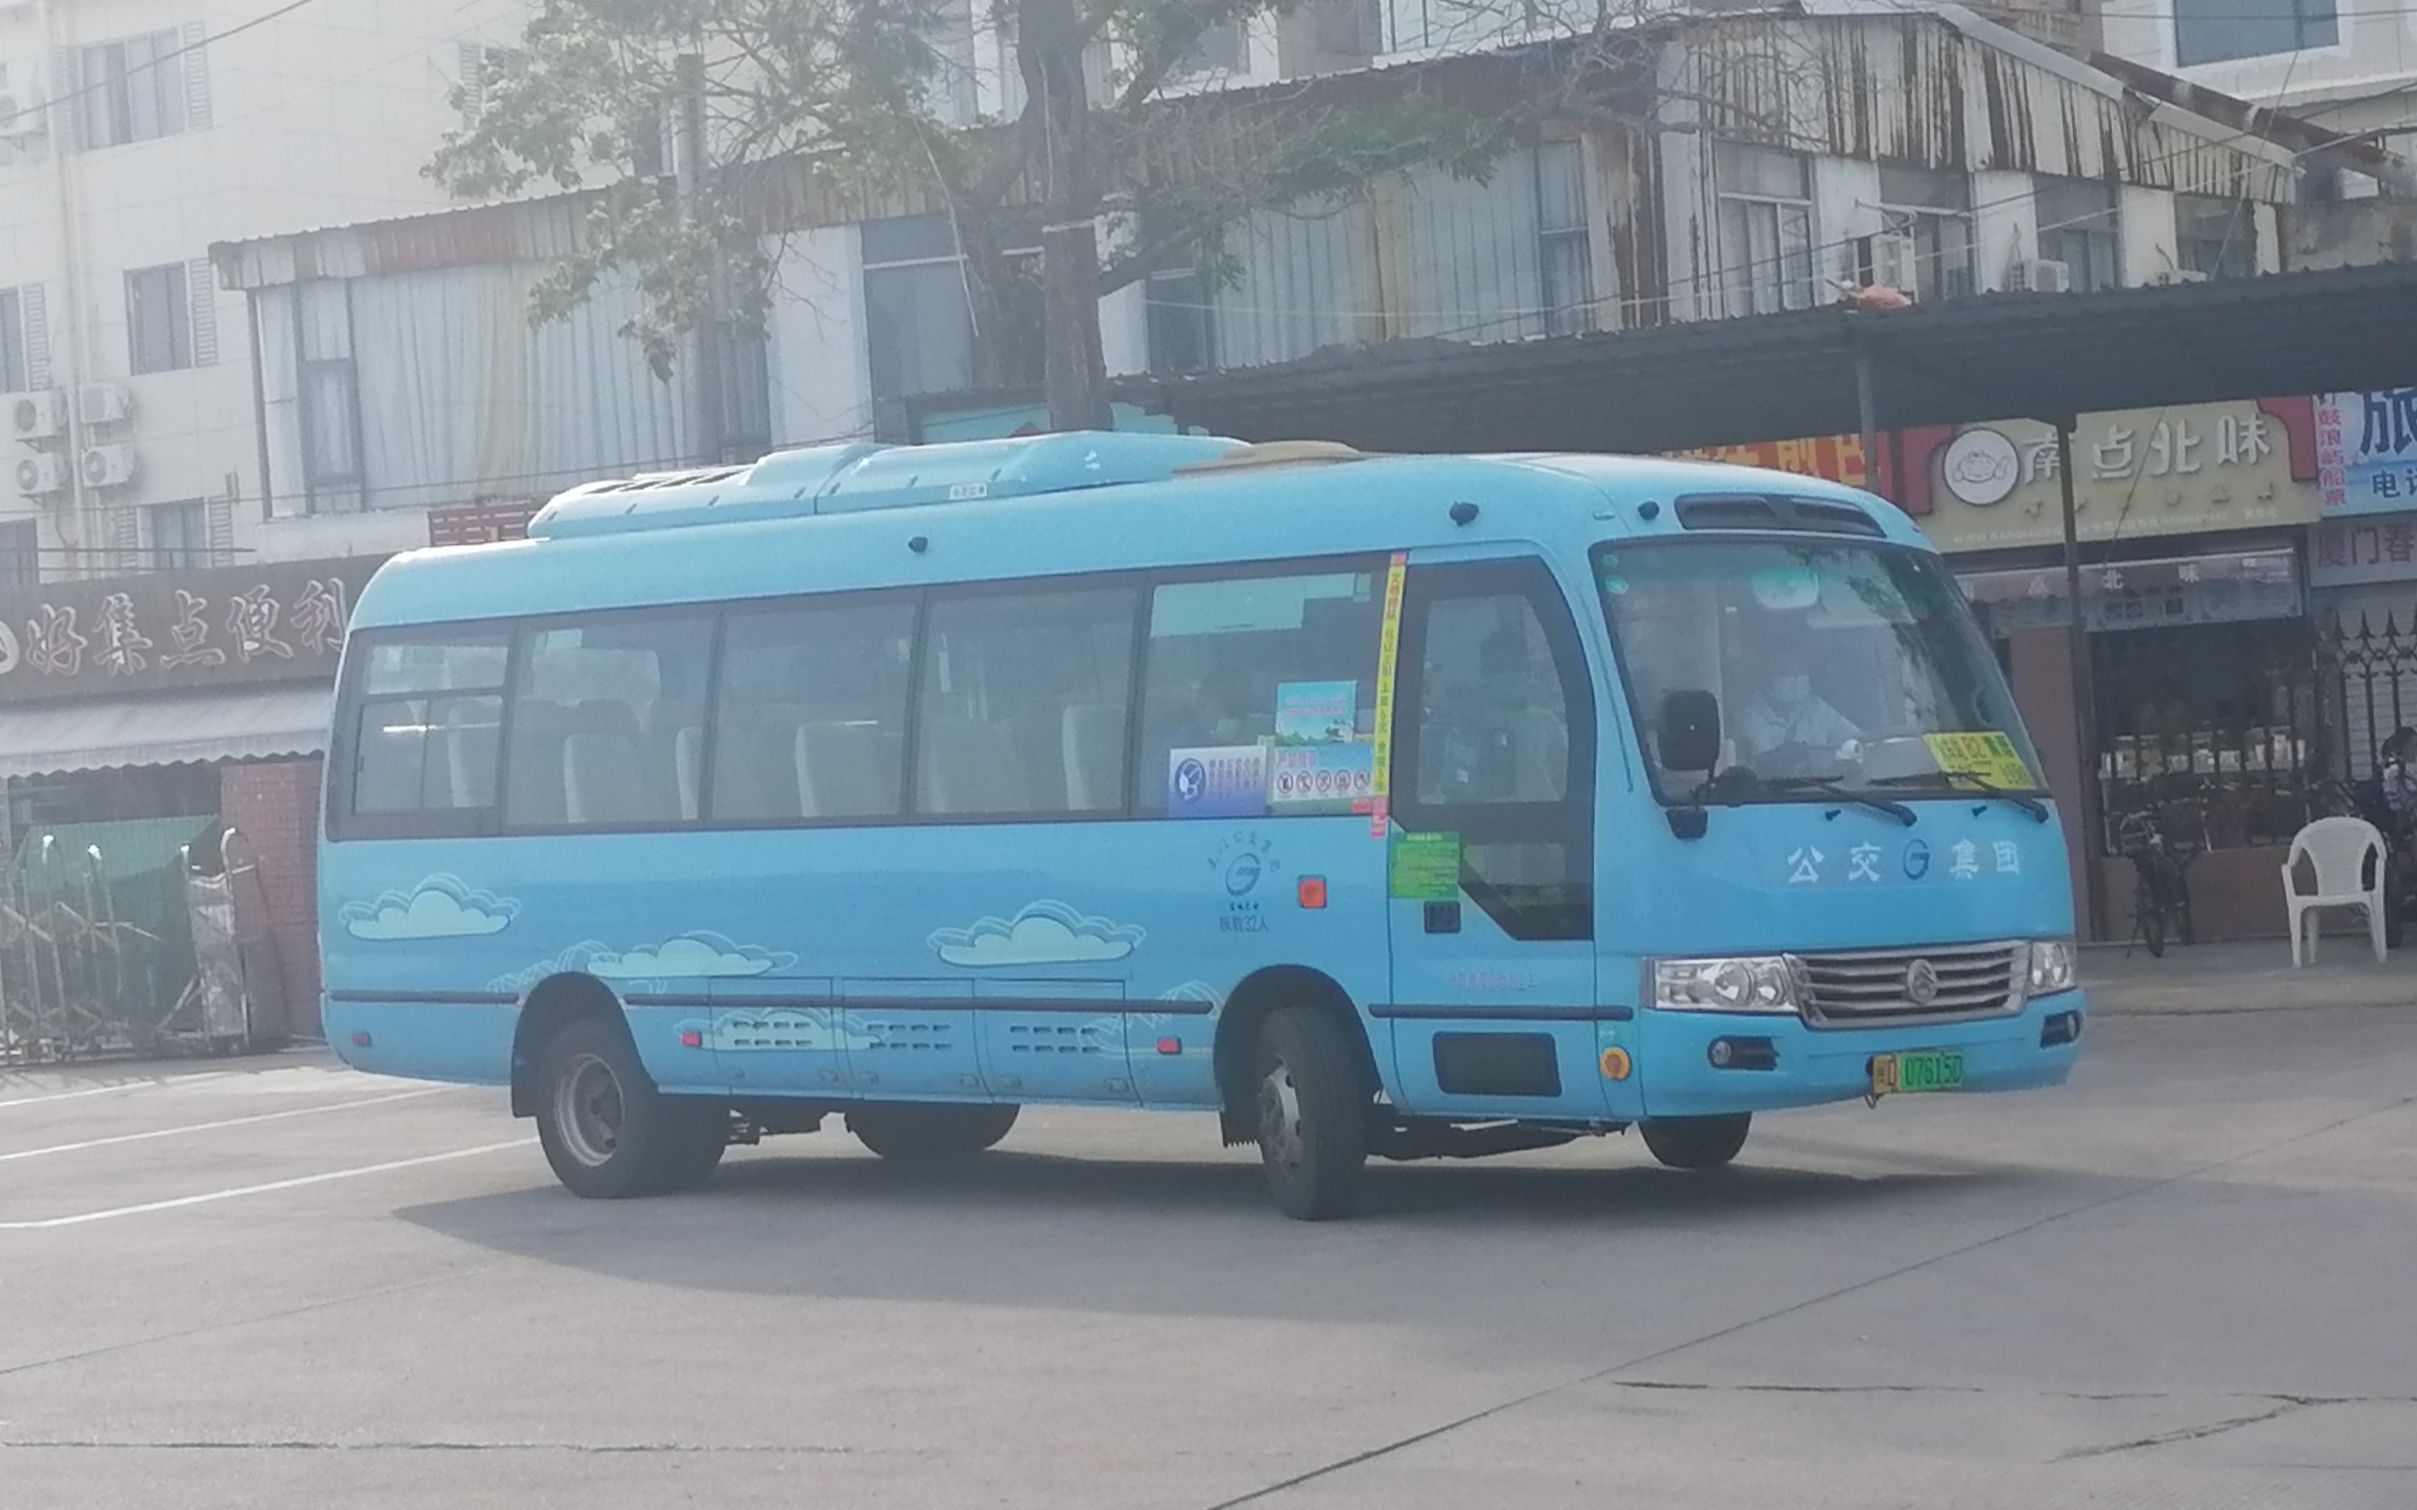 厦门环岛旅游观光巴士,马蜂窝自由行 - 马蜂窝自由行